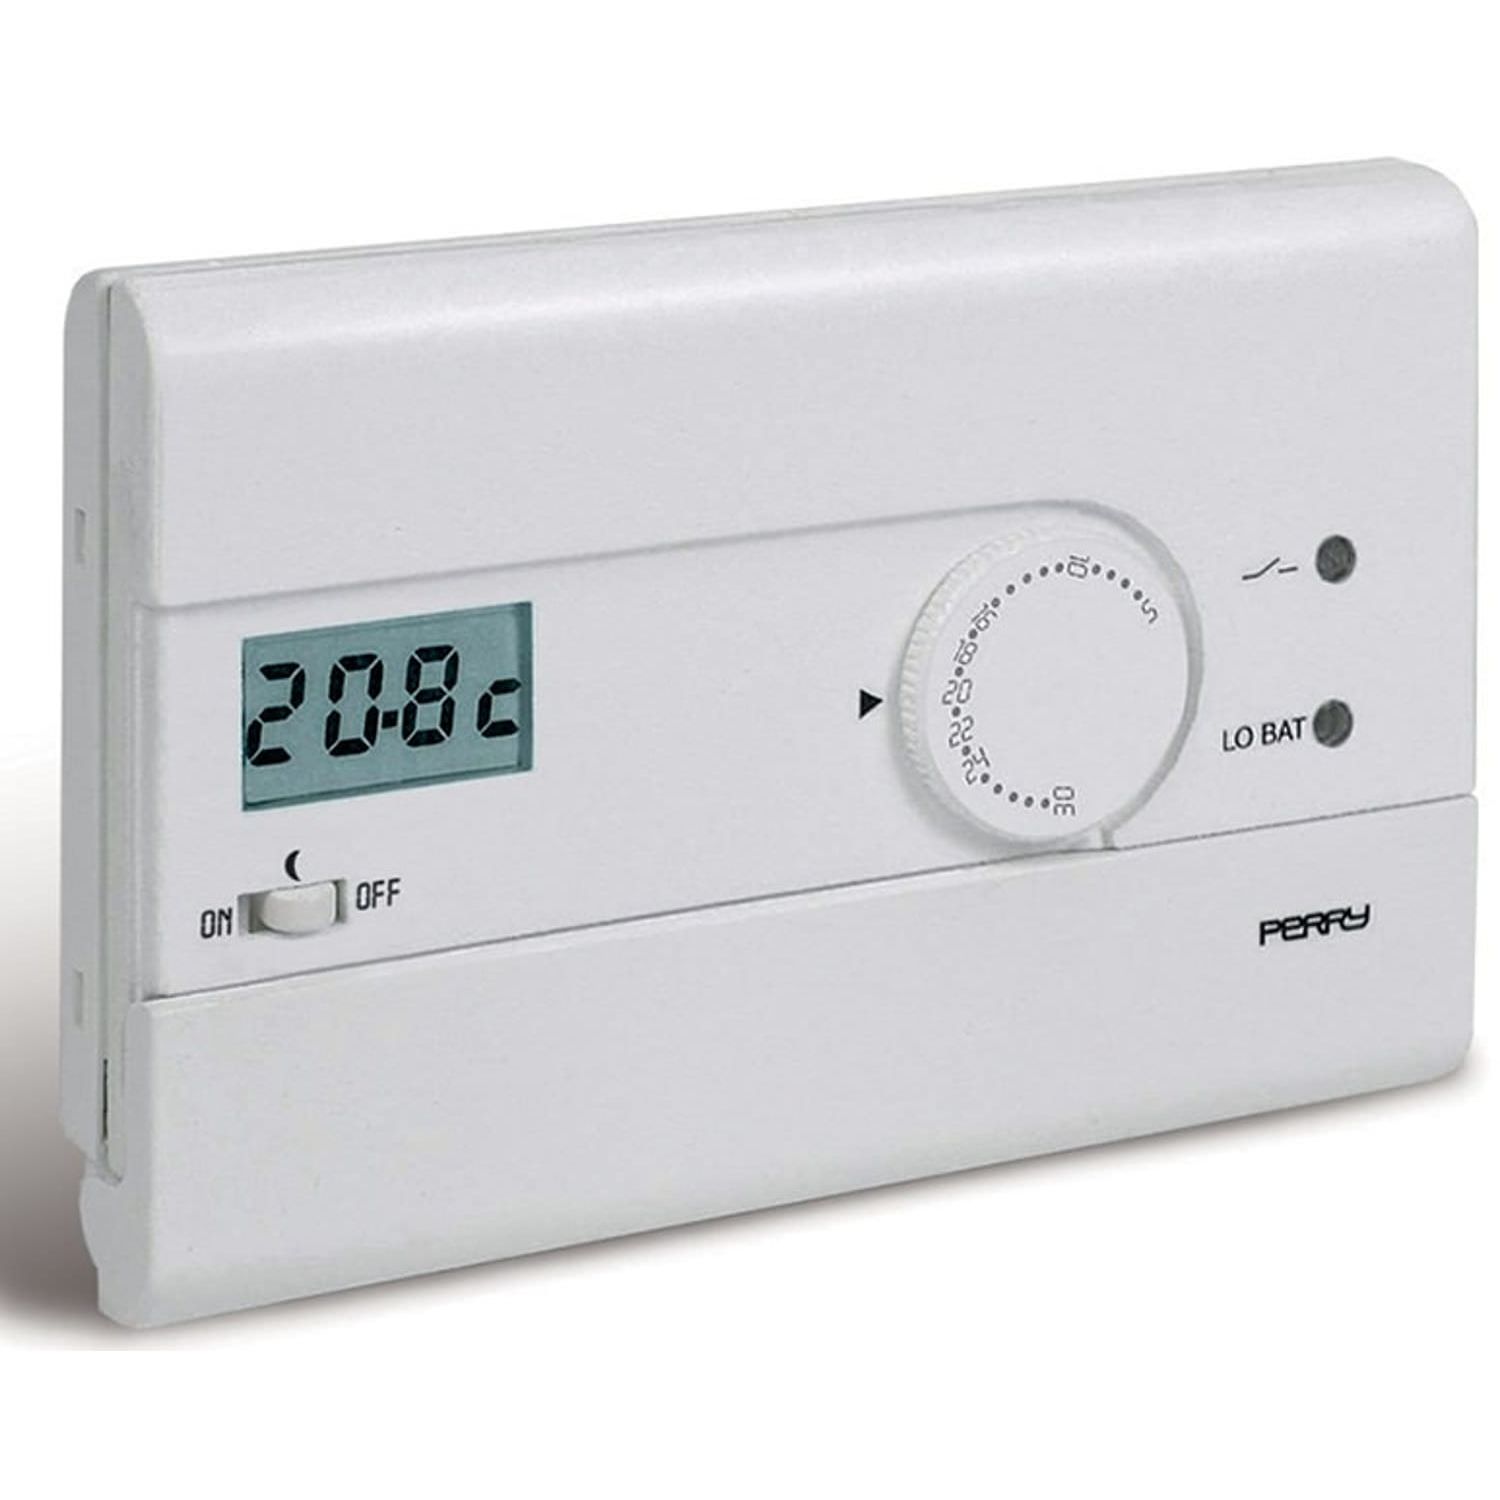 White digital wall thermostat 3V